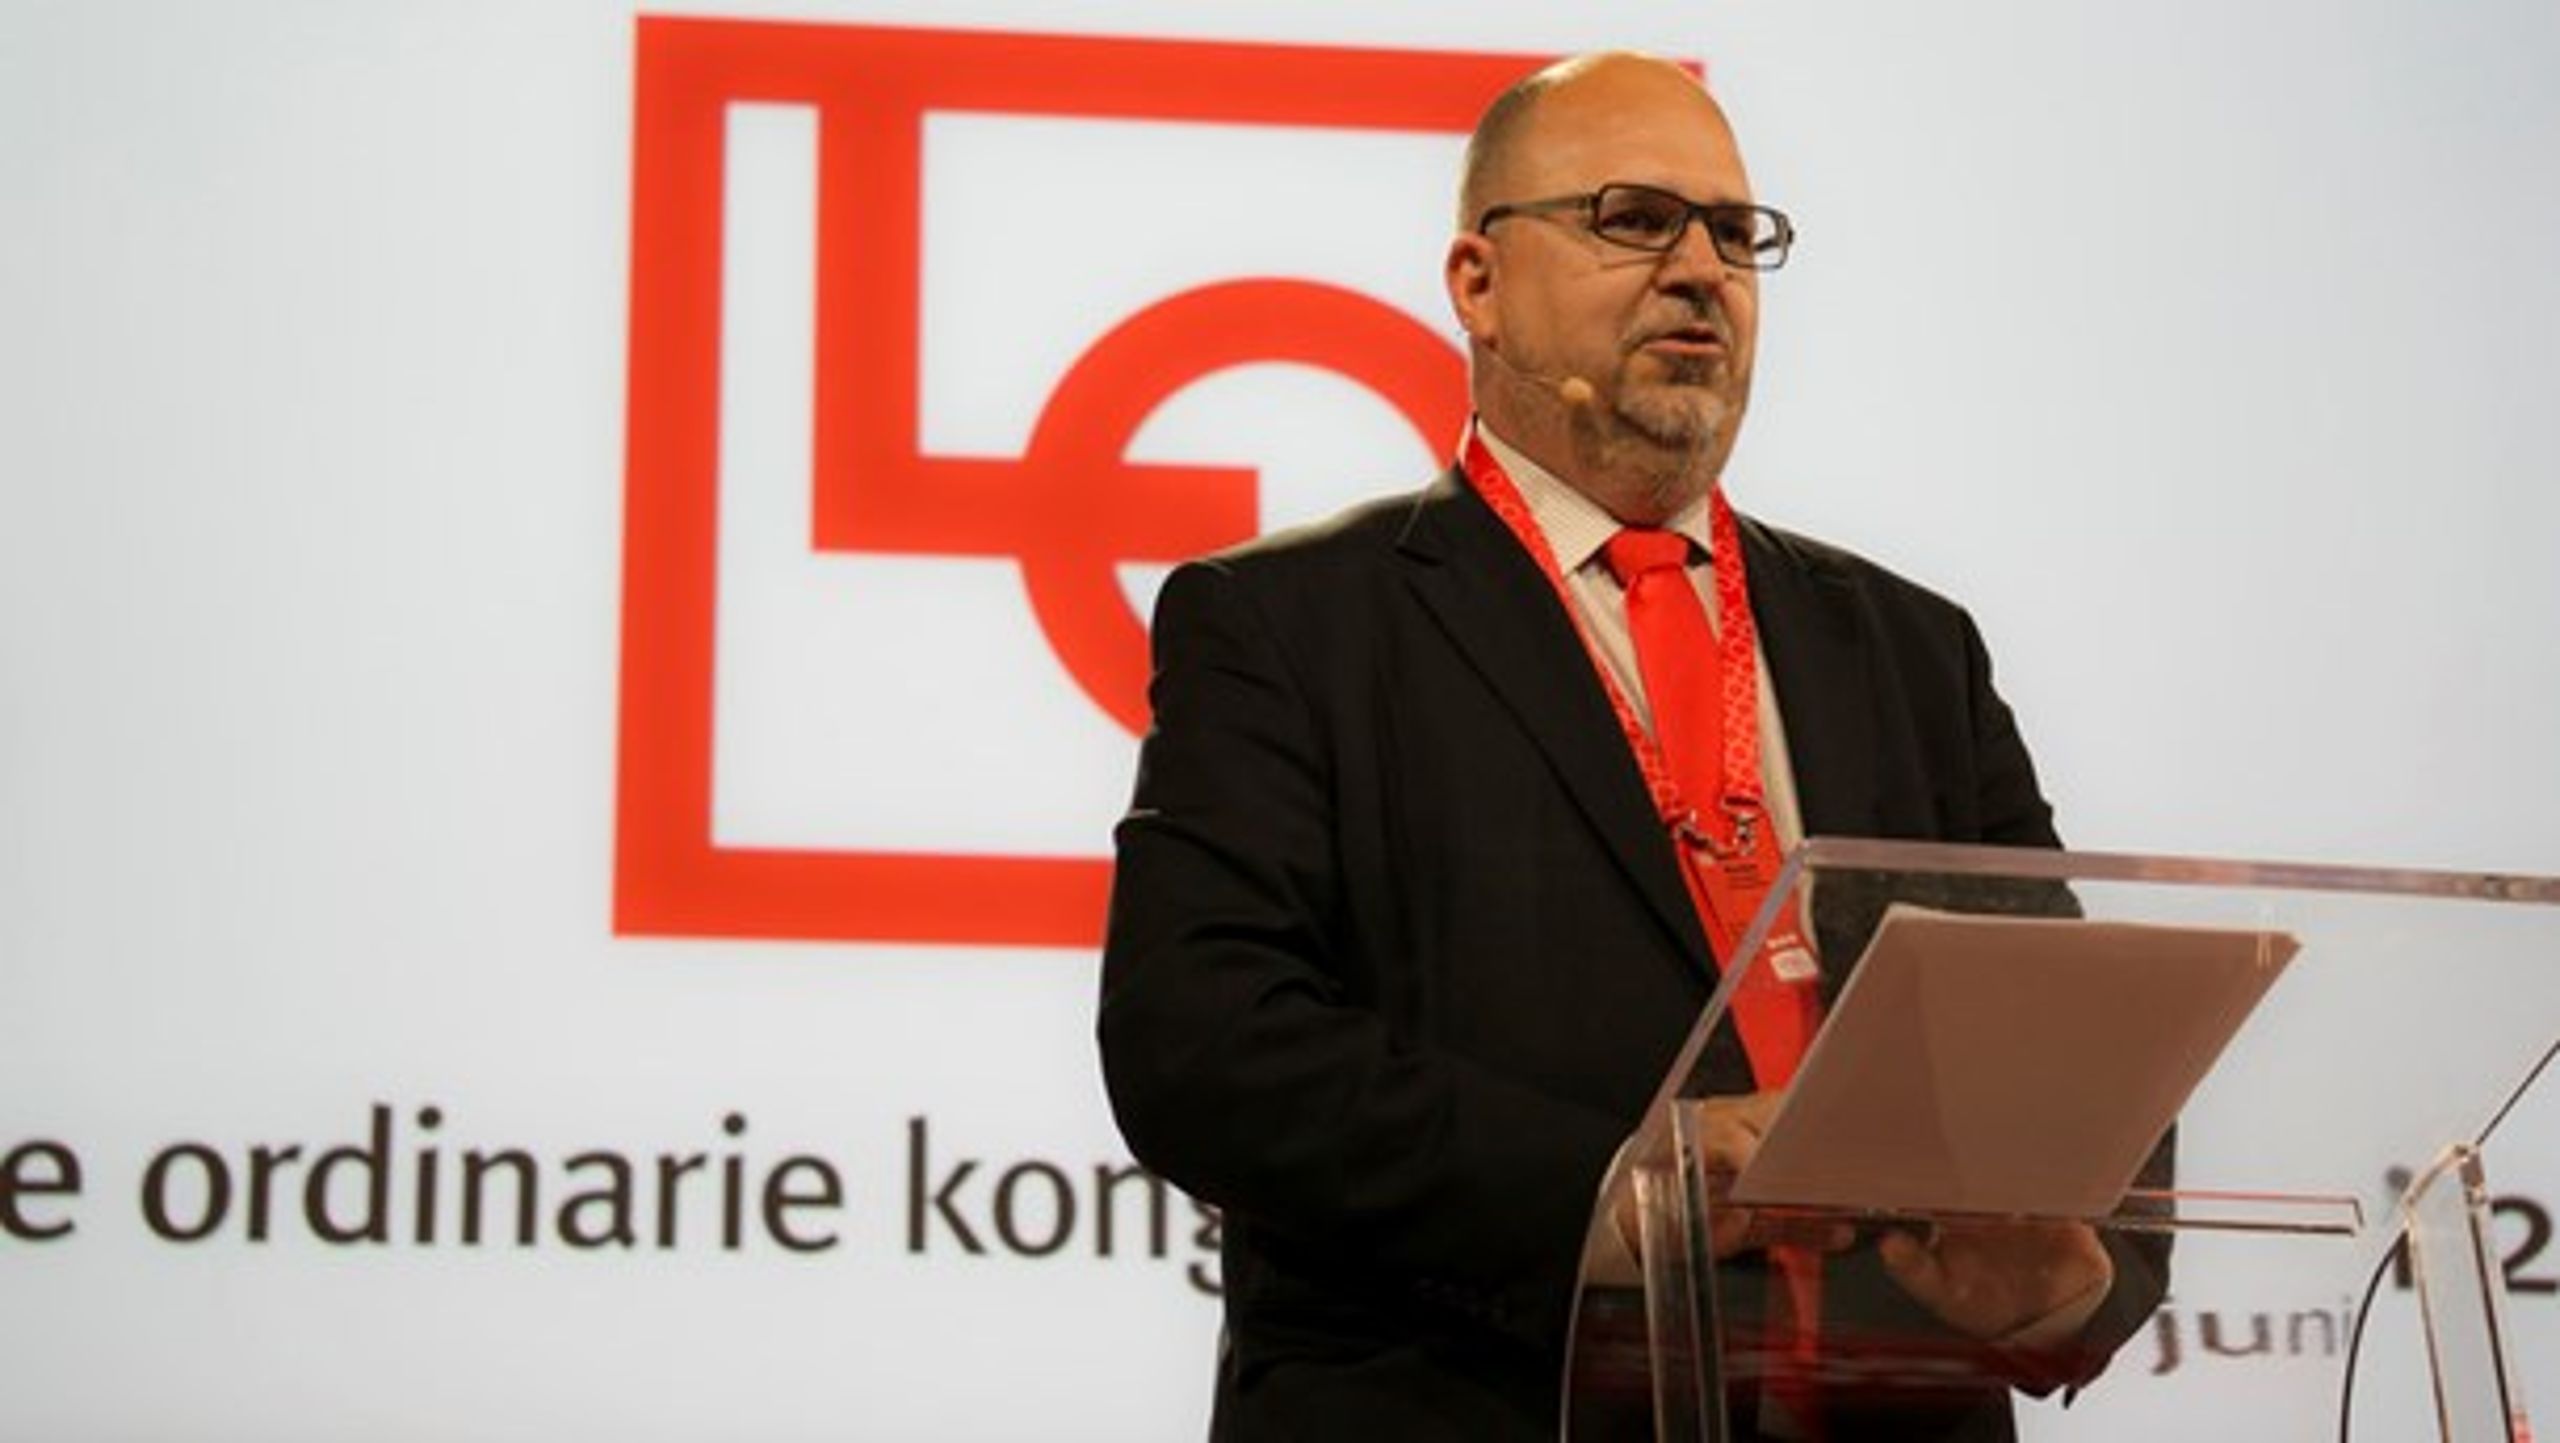 <div>Karl-Petter Thorwaldsson omvaldes som ordförande för LO under kongressen (Foto: LO).<br></div>